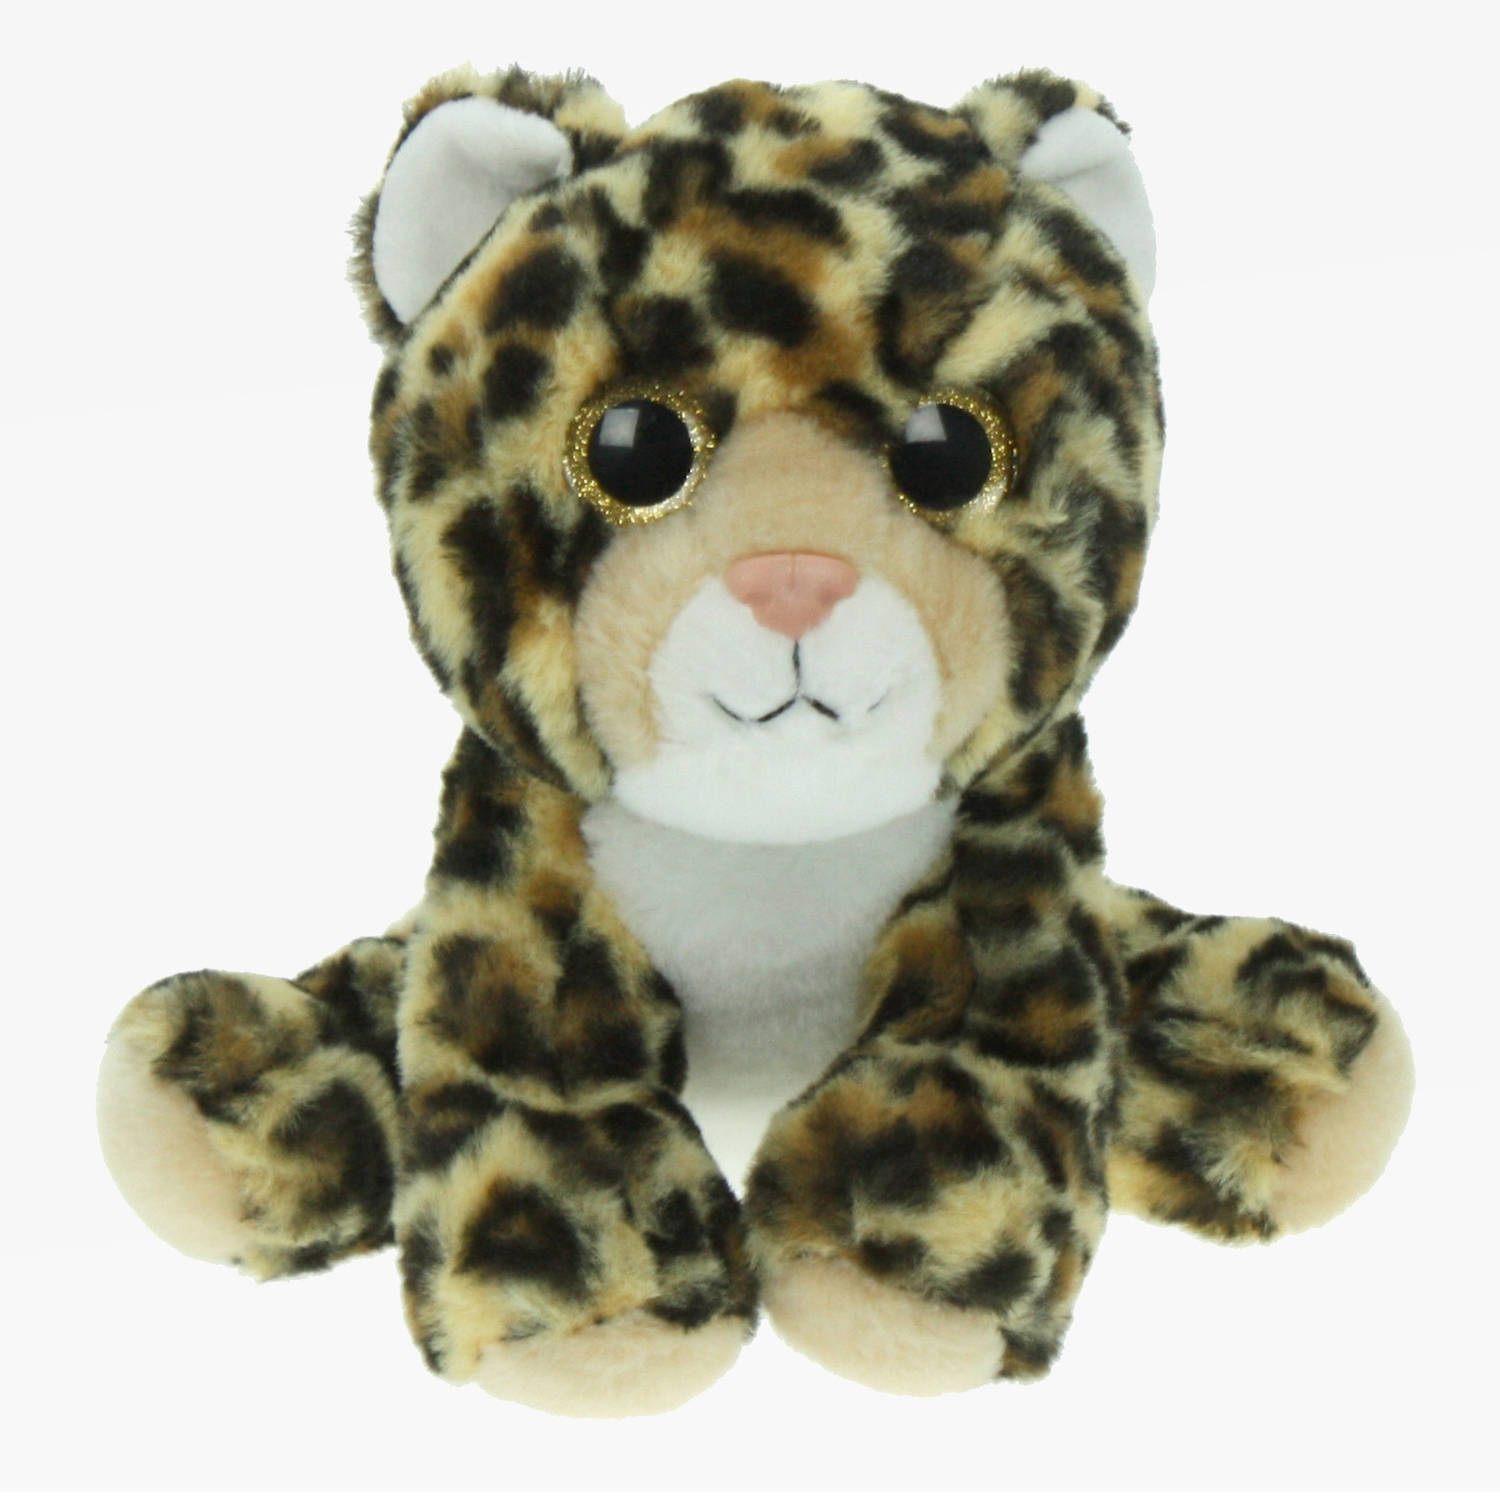 Pluche knuffel dieren Luipaard van 25 cm - Speelgoed knuffels - Cadeau voor jongens/meisjes